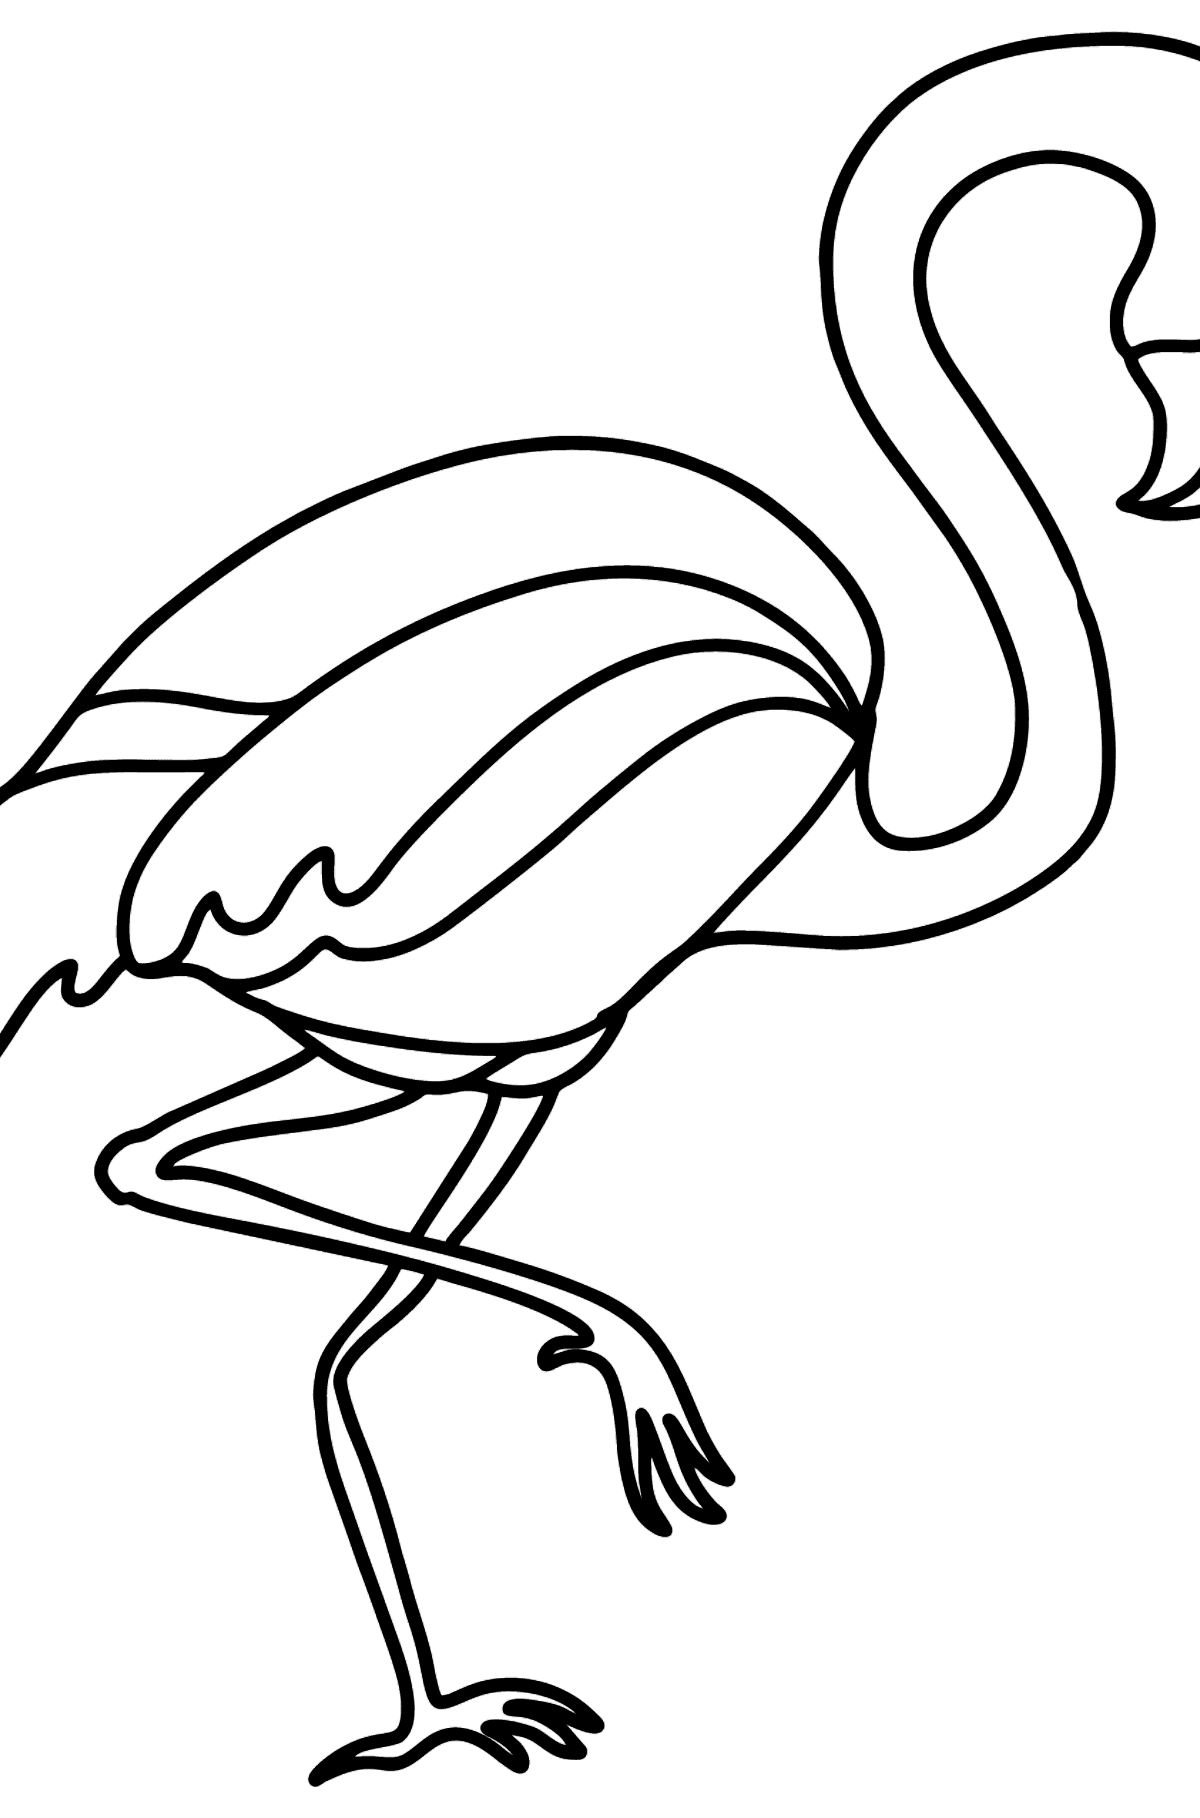 Flamingo tegning til farvning - Tegninger til farvelægning for børn